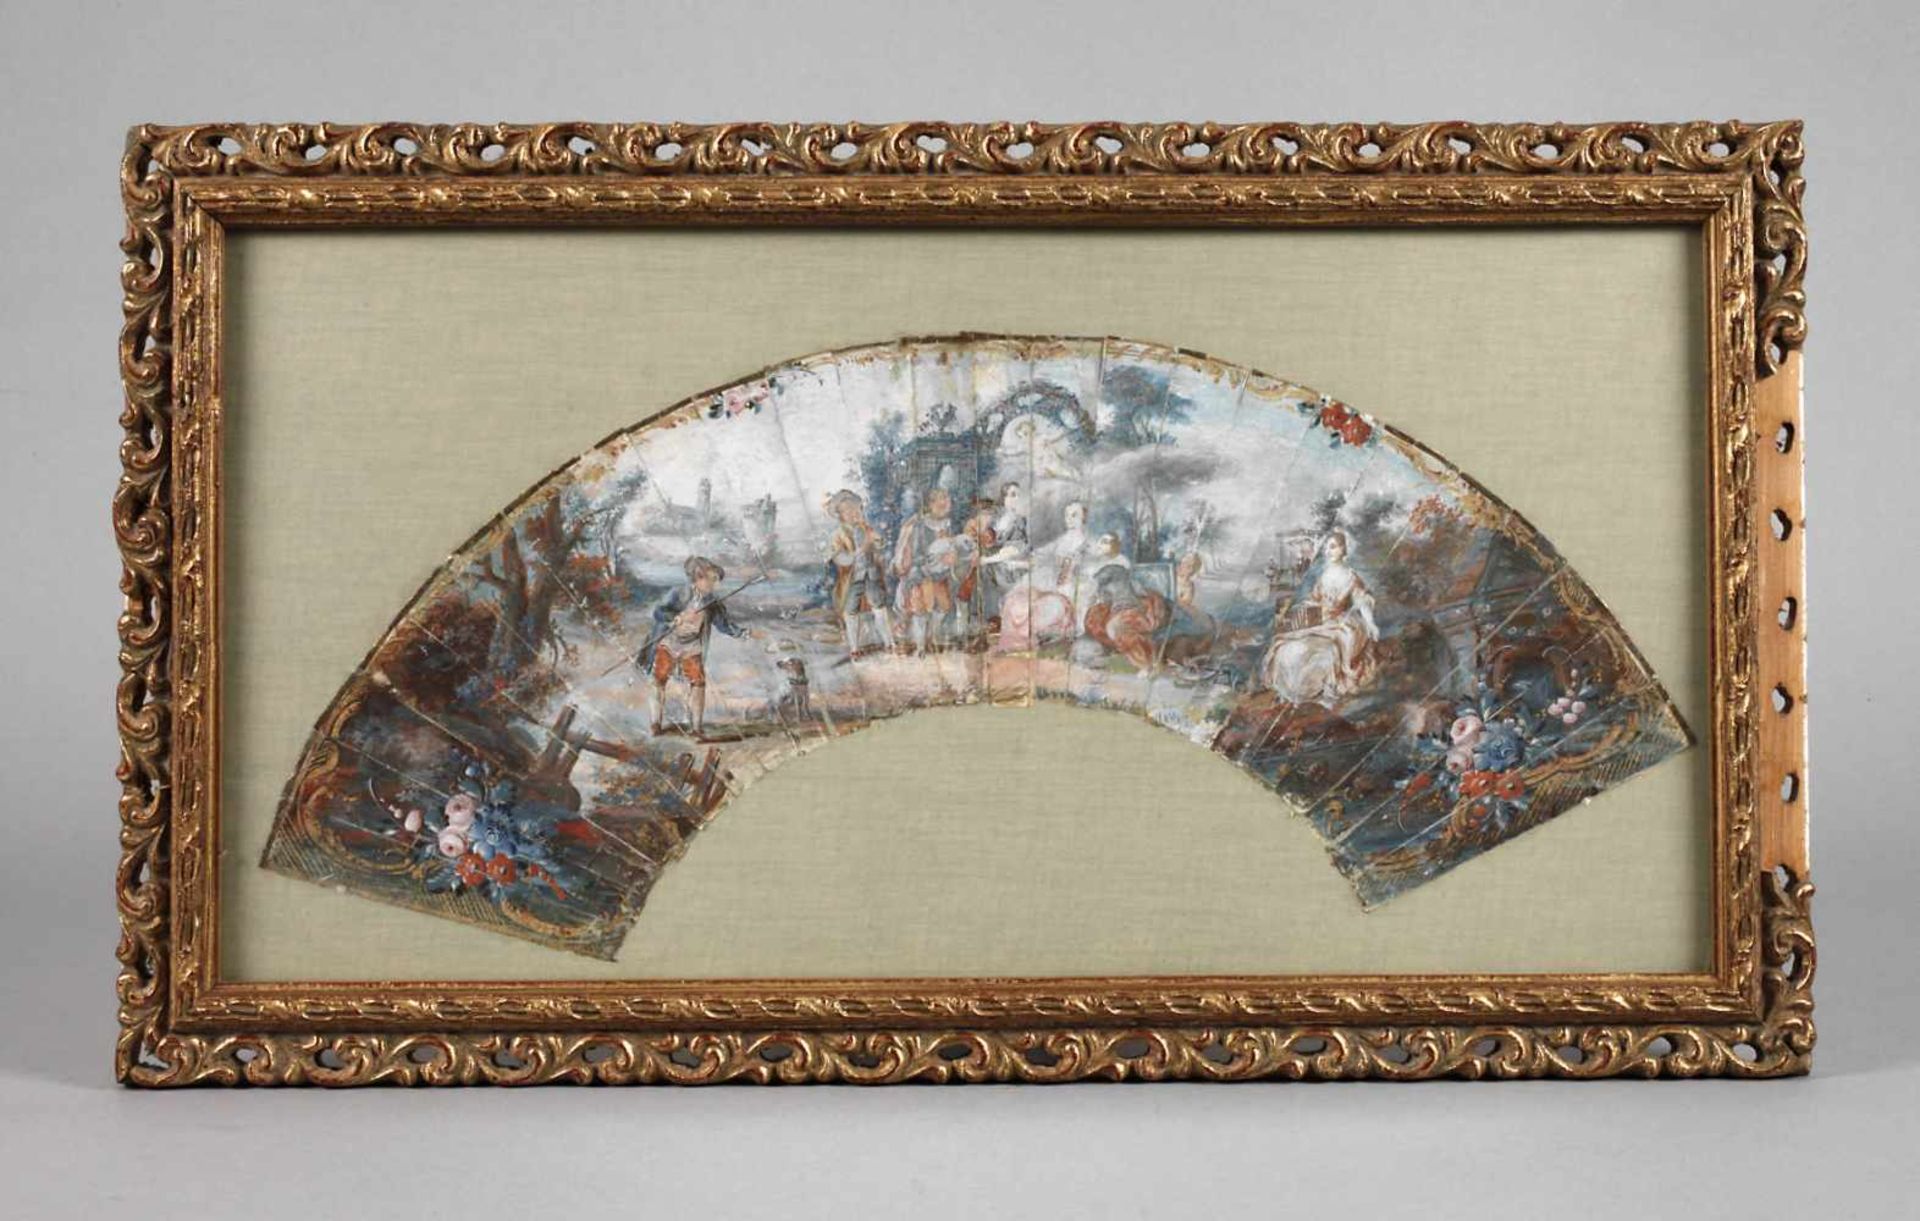 Gerahmter Fächer Rokokoum 1780, Gouache auf Papier, ungemarkt, genrehafte Darstellung einer feinen